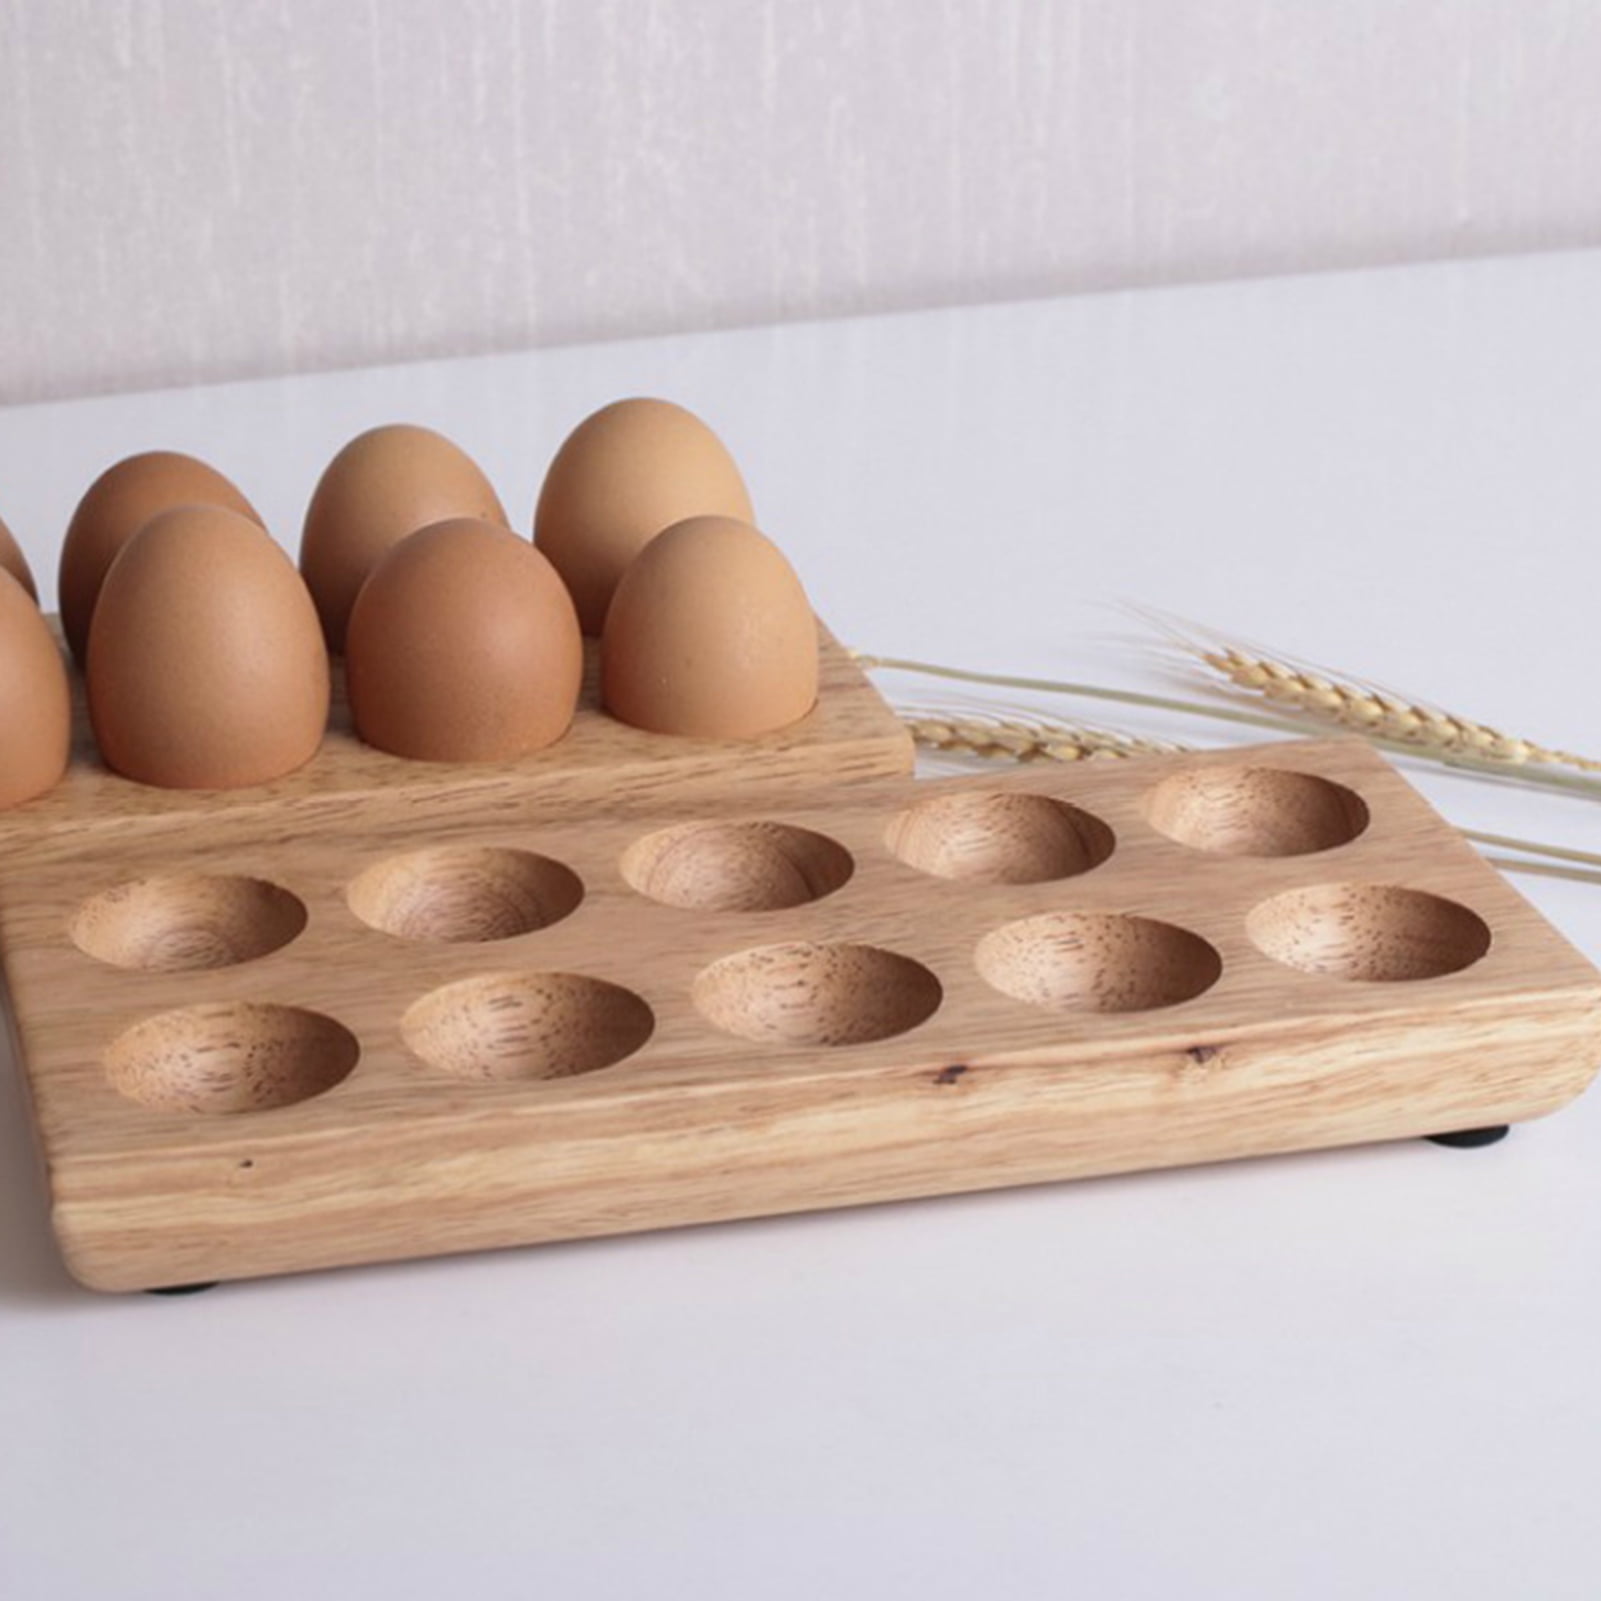 Egg in Egg Holder Stock Photo by ©paulbrighton 15517315